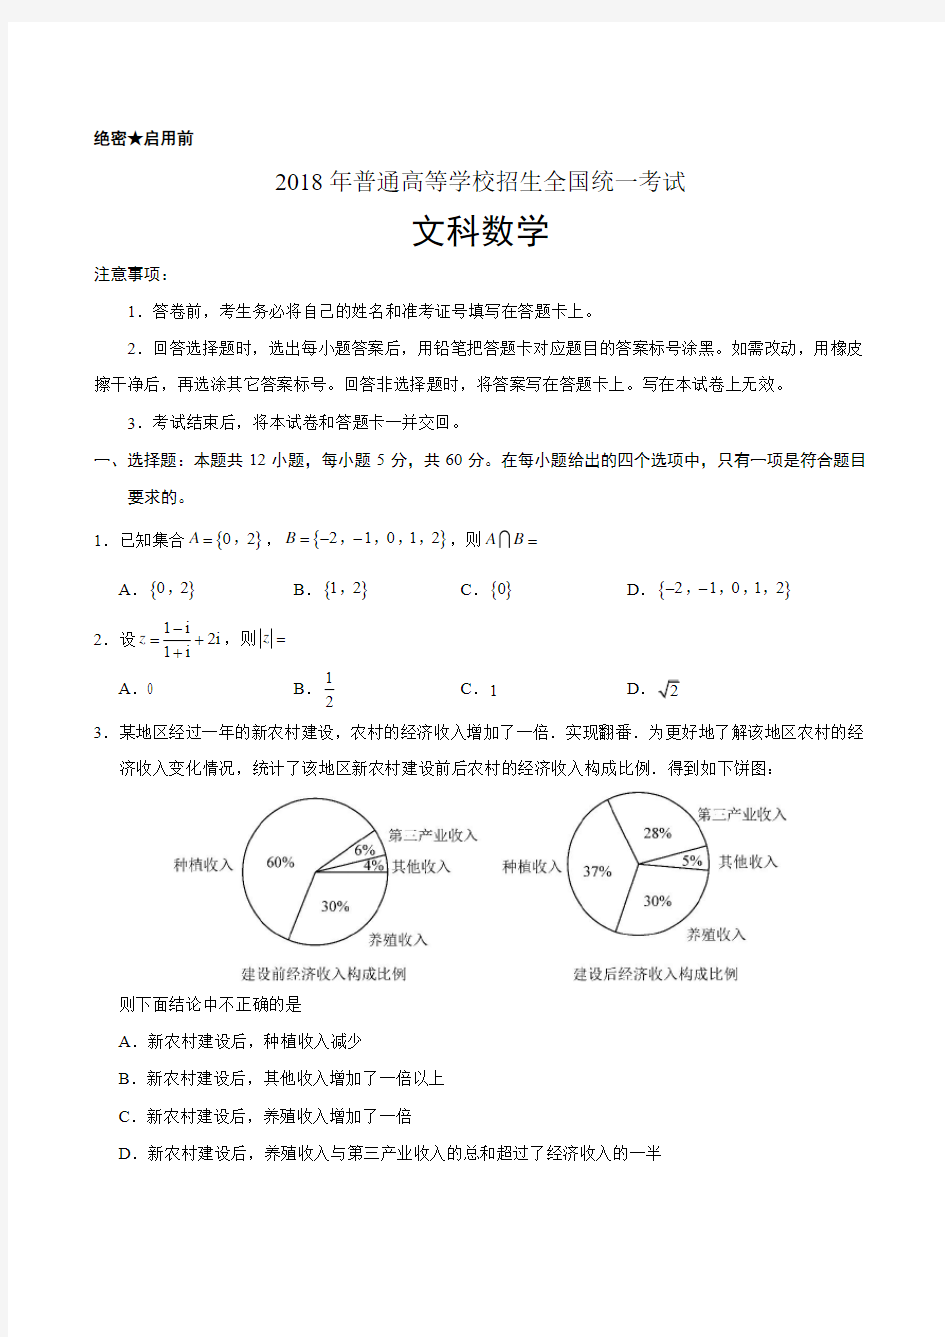 2018年安徽省高考试题(文科)